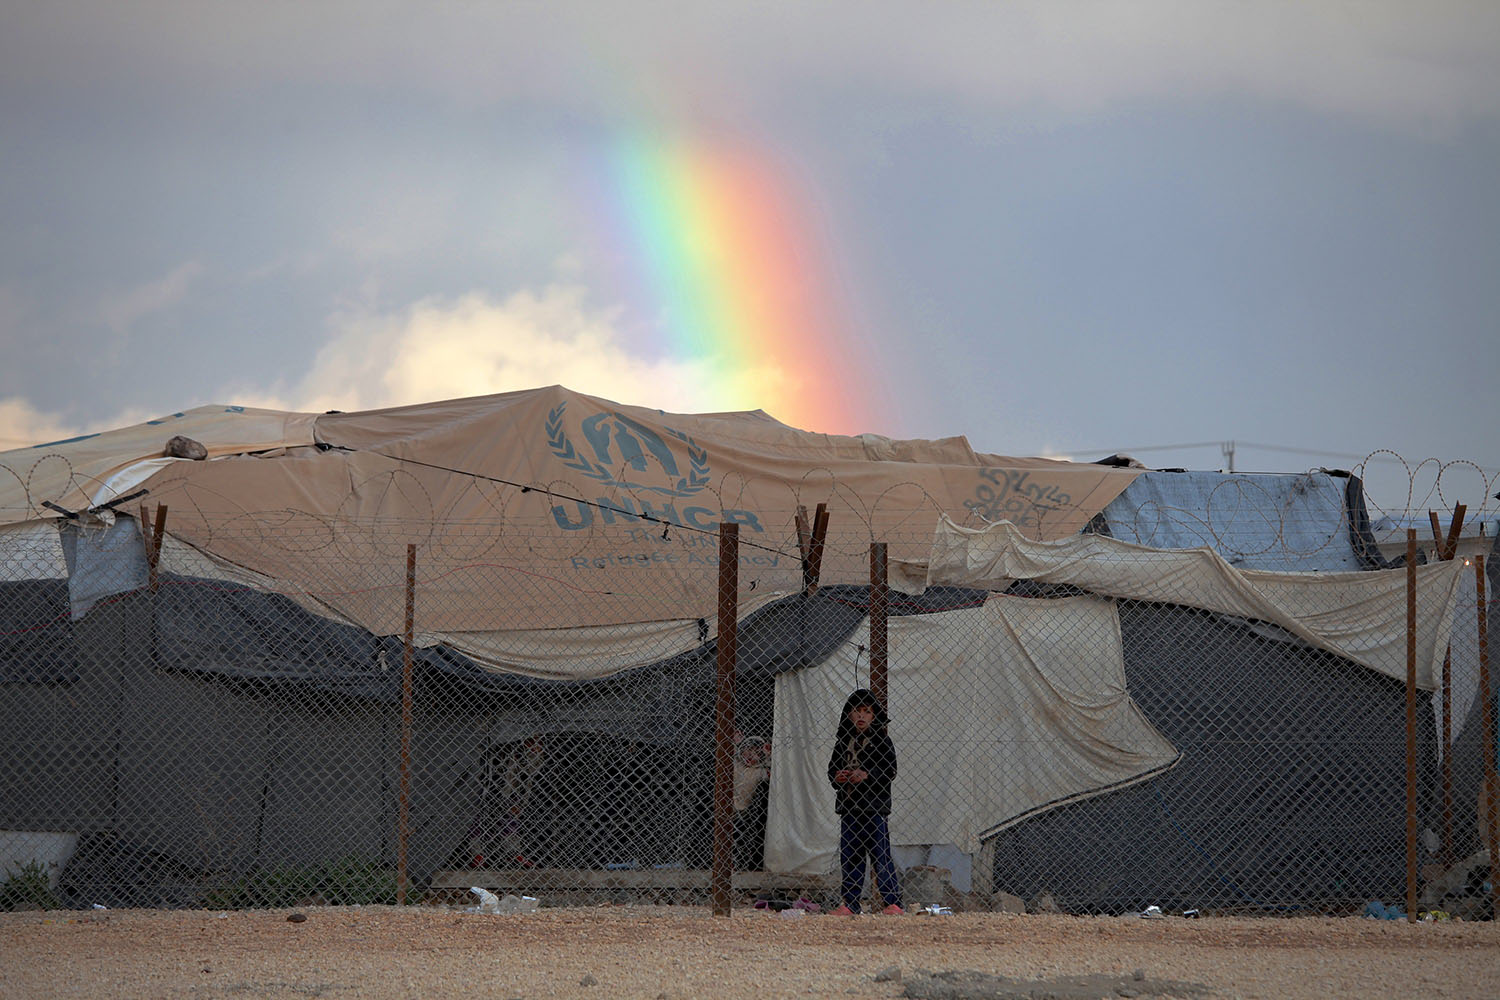 APTOPIX Mideast Jordan Syrian Refugees